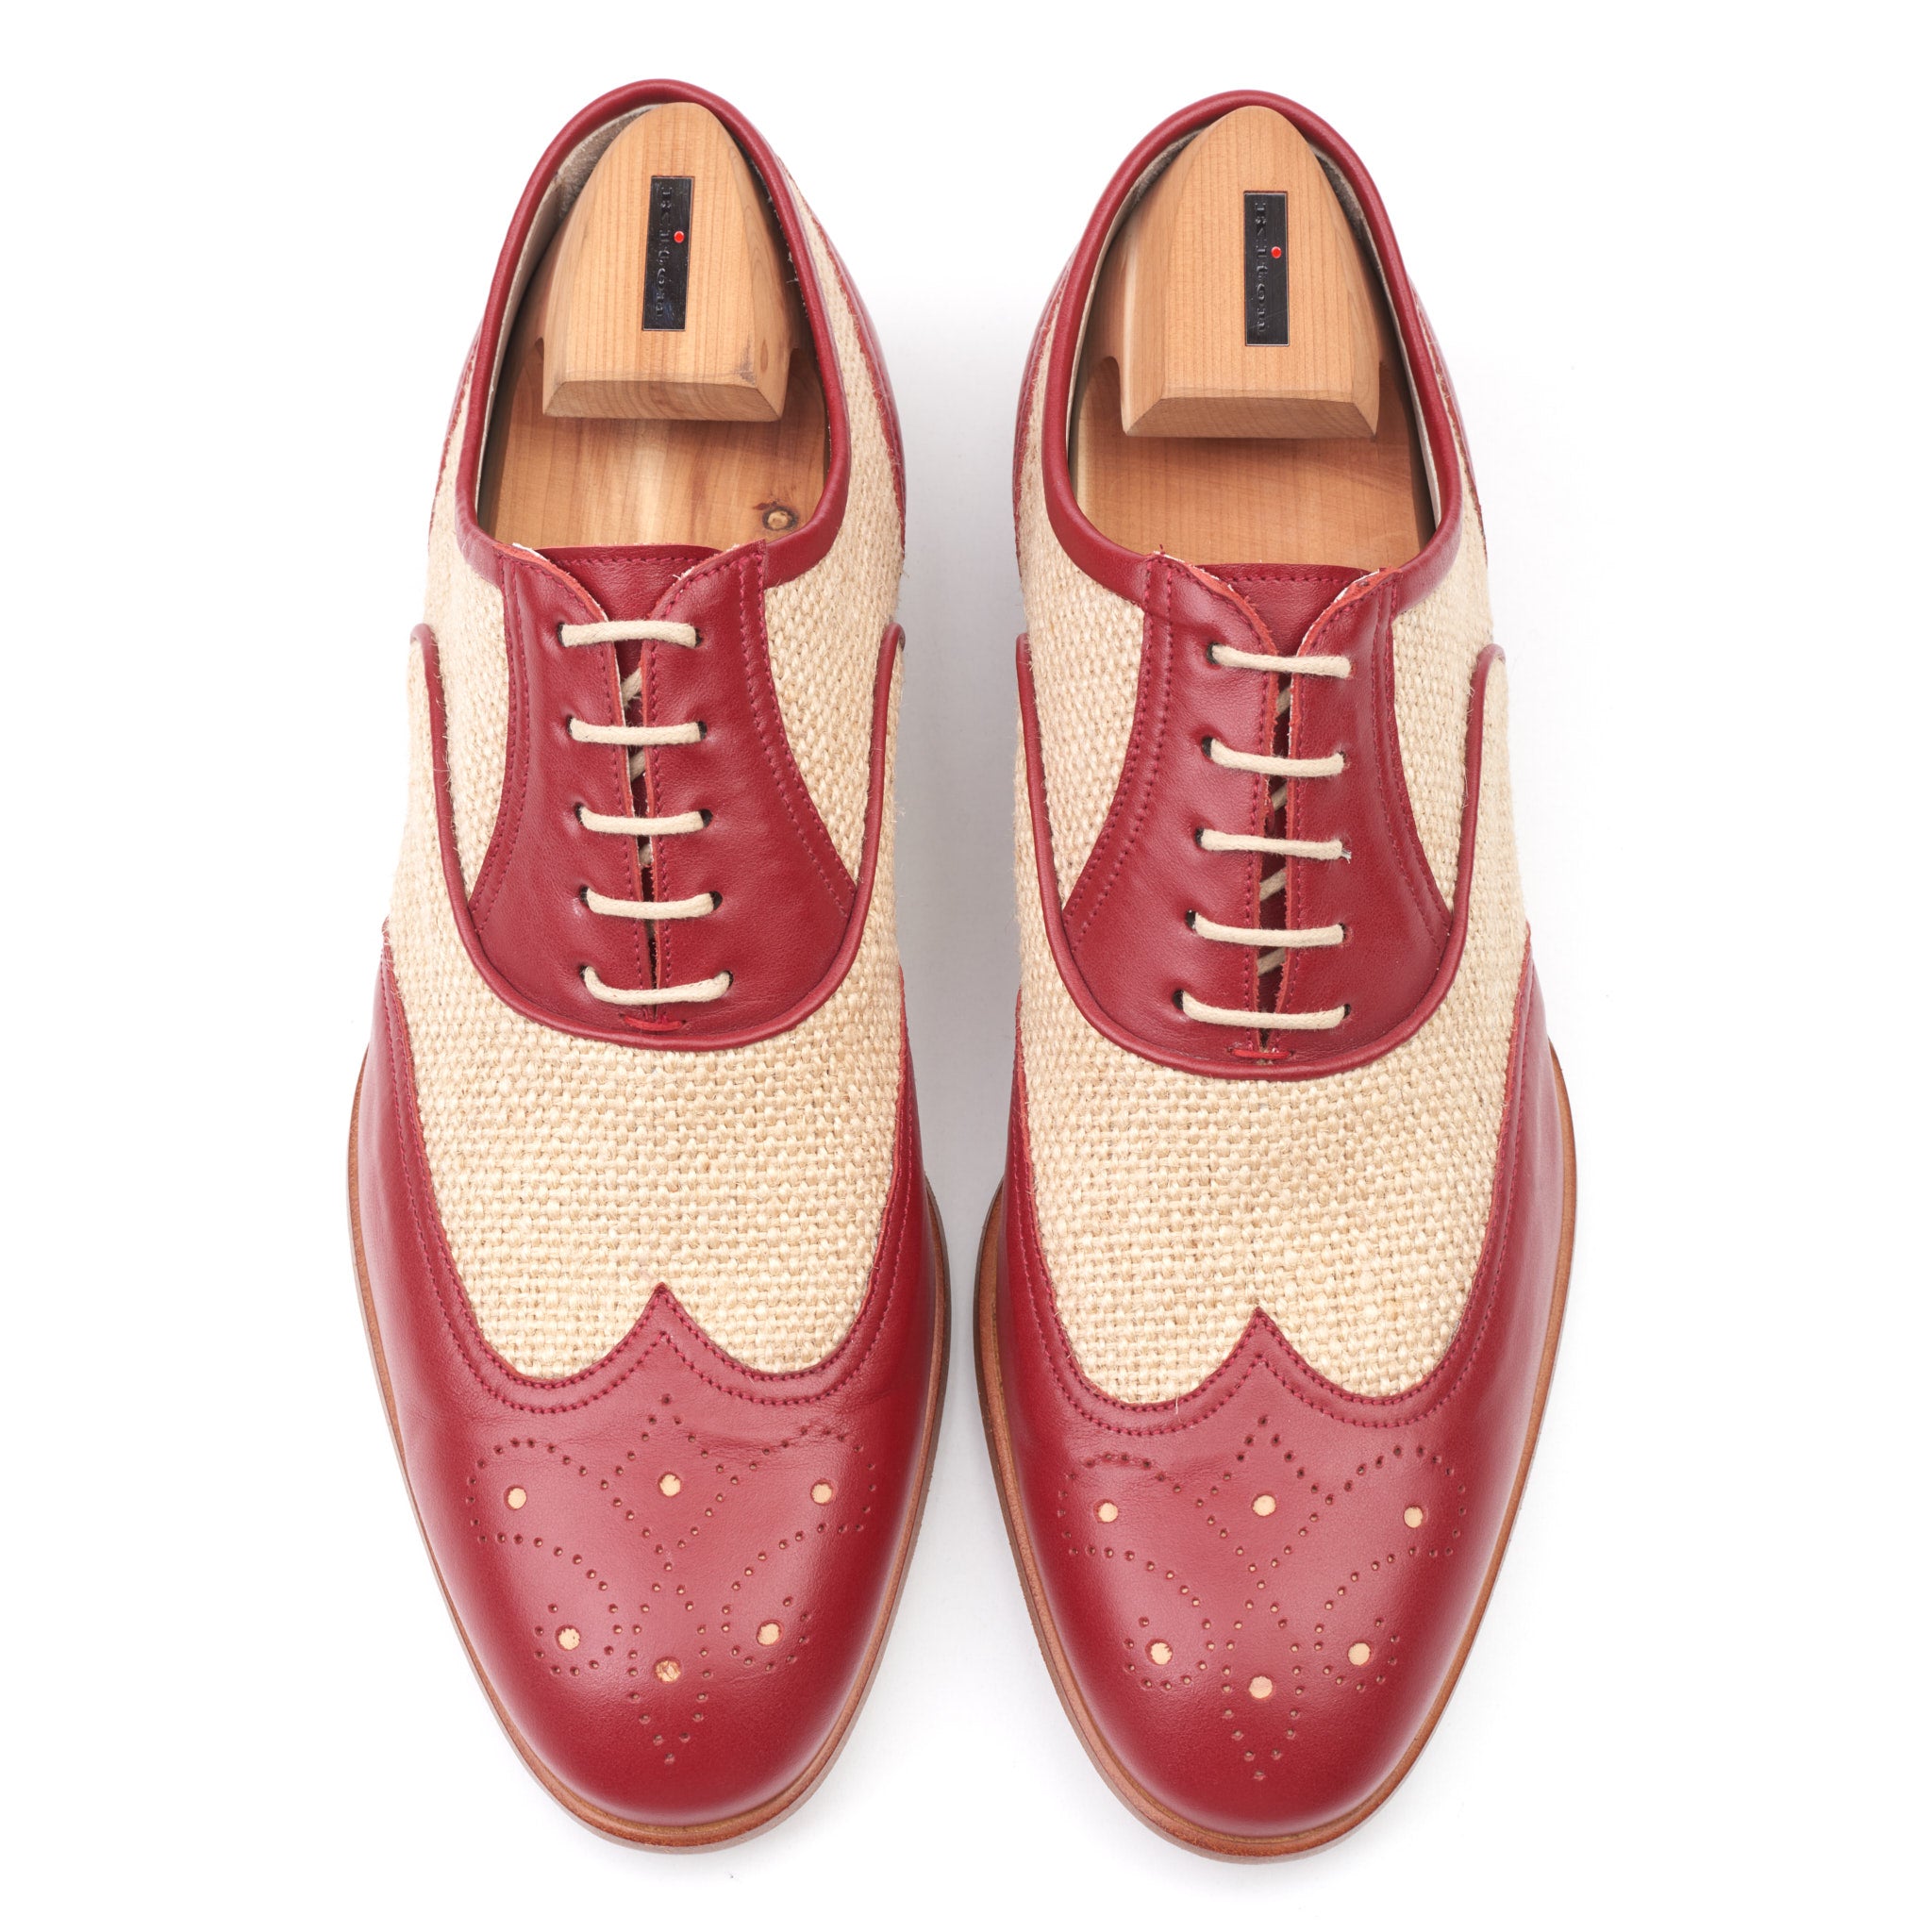 Men's Louis Vuitton Burgundy Lace Up Spectator Oxford Shoes Size 10.5